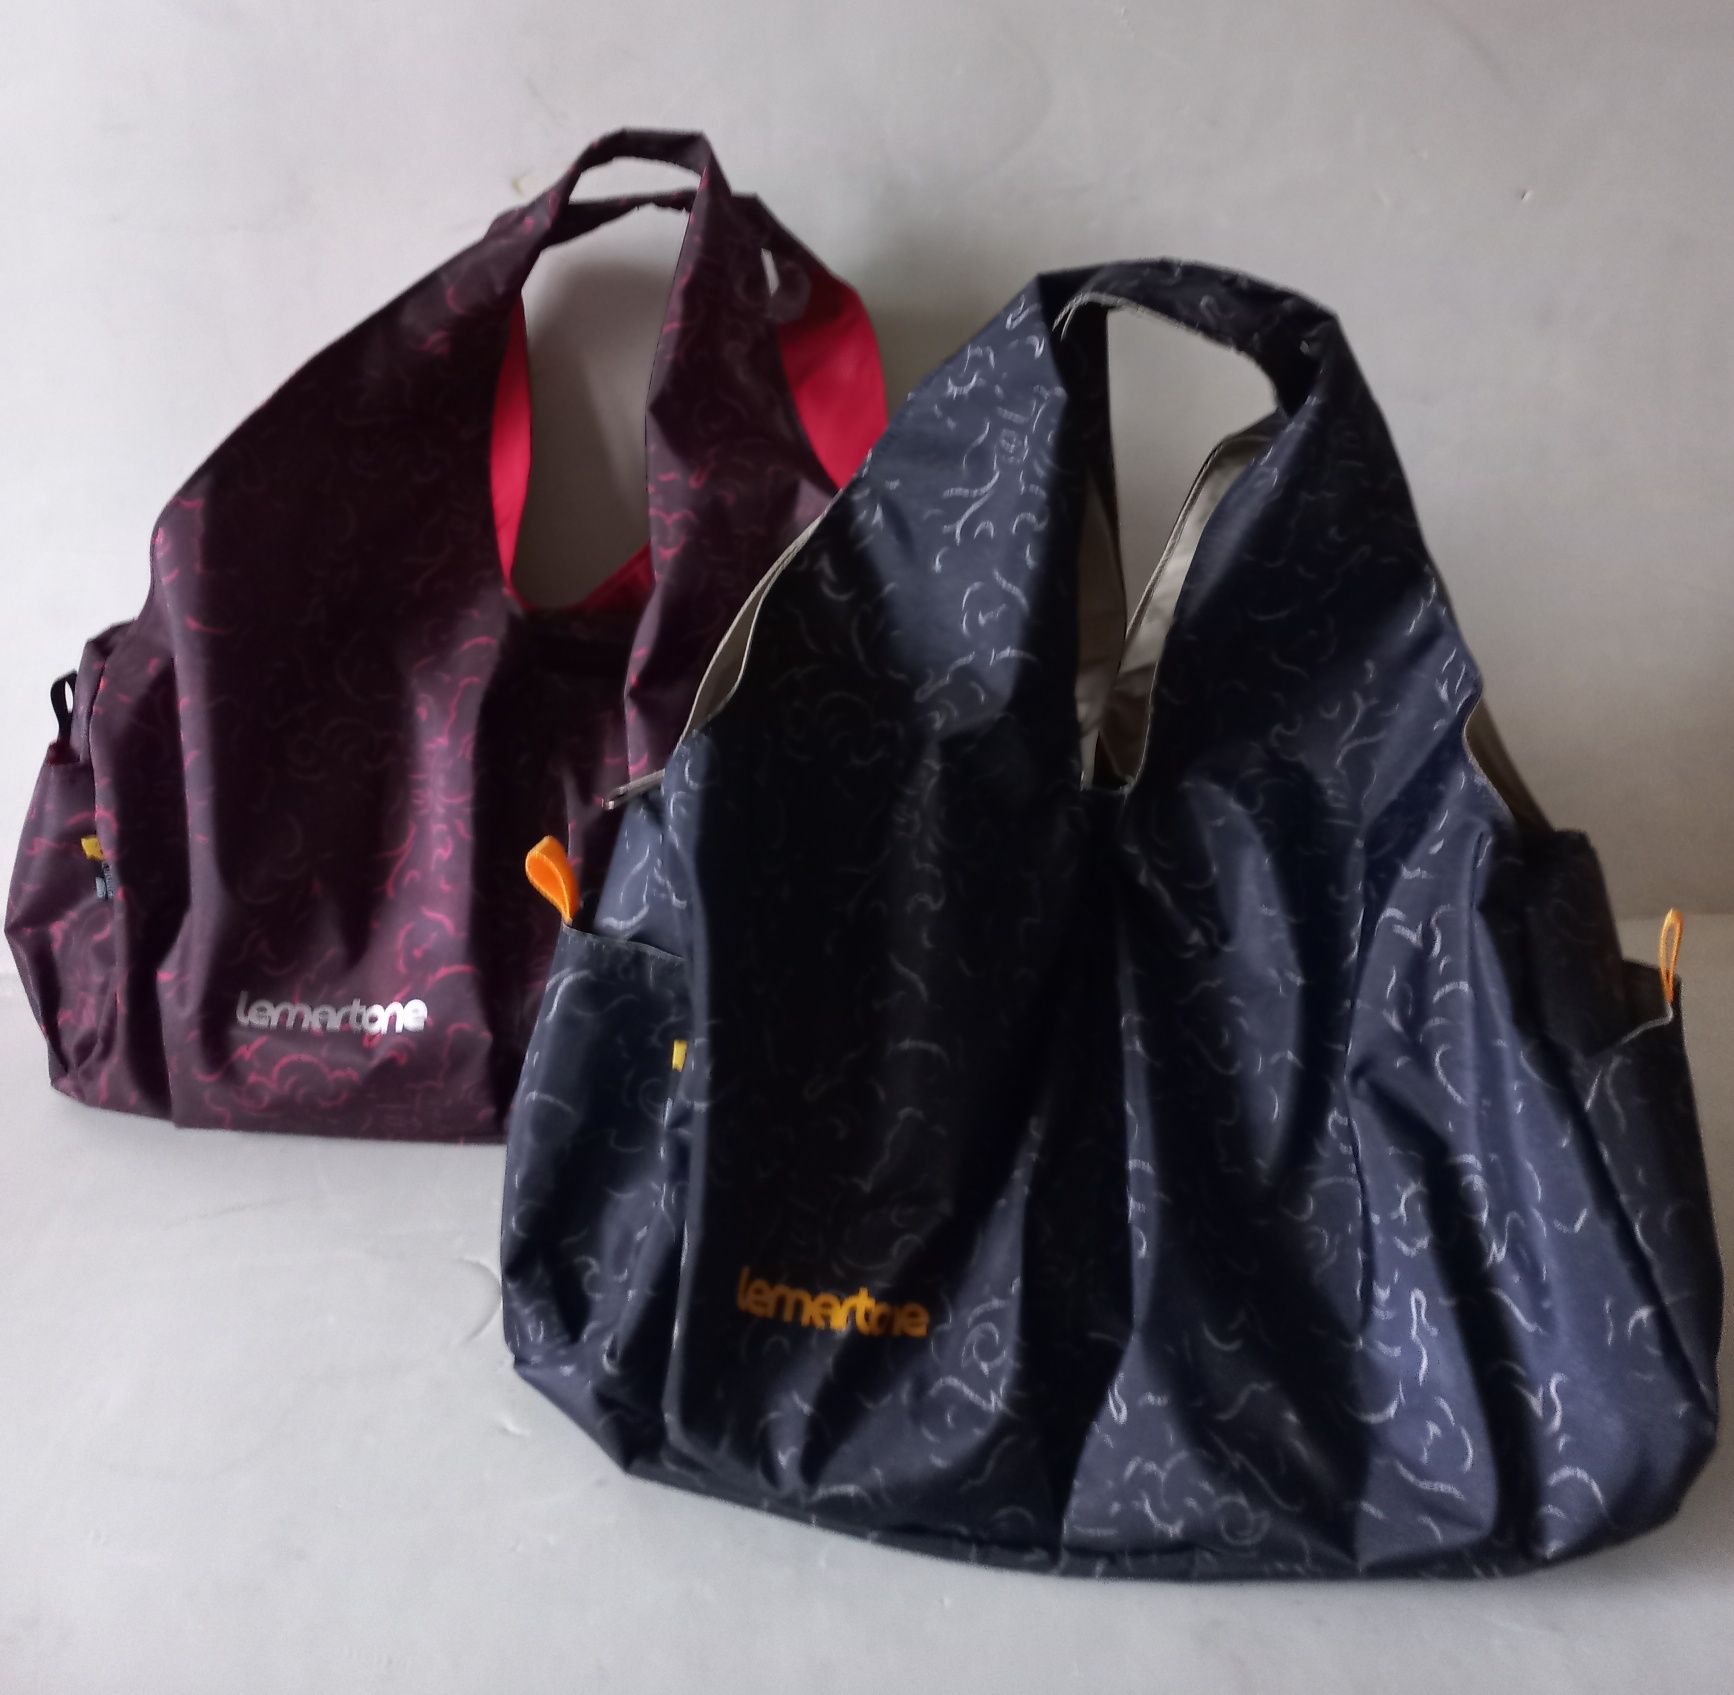 Женская городская, спортивная сумка ТМ Lemartone, ручная кладь